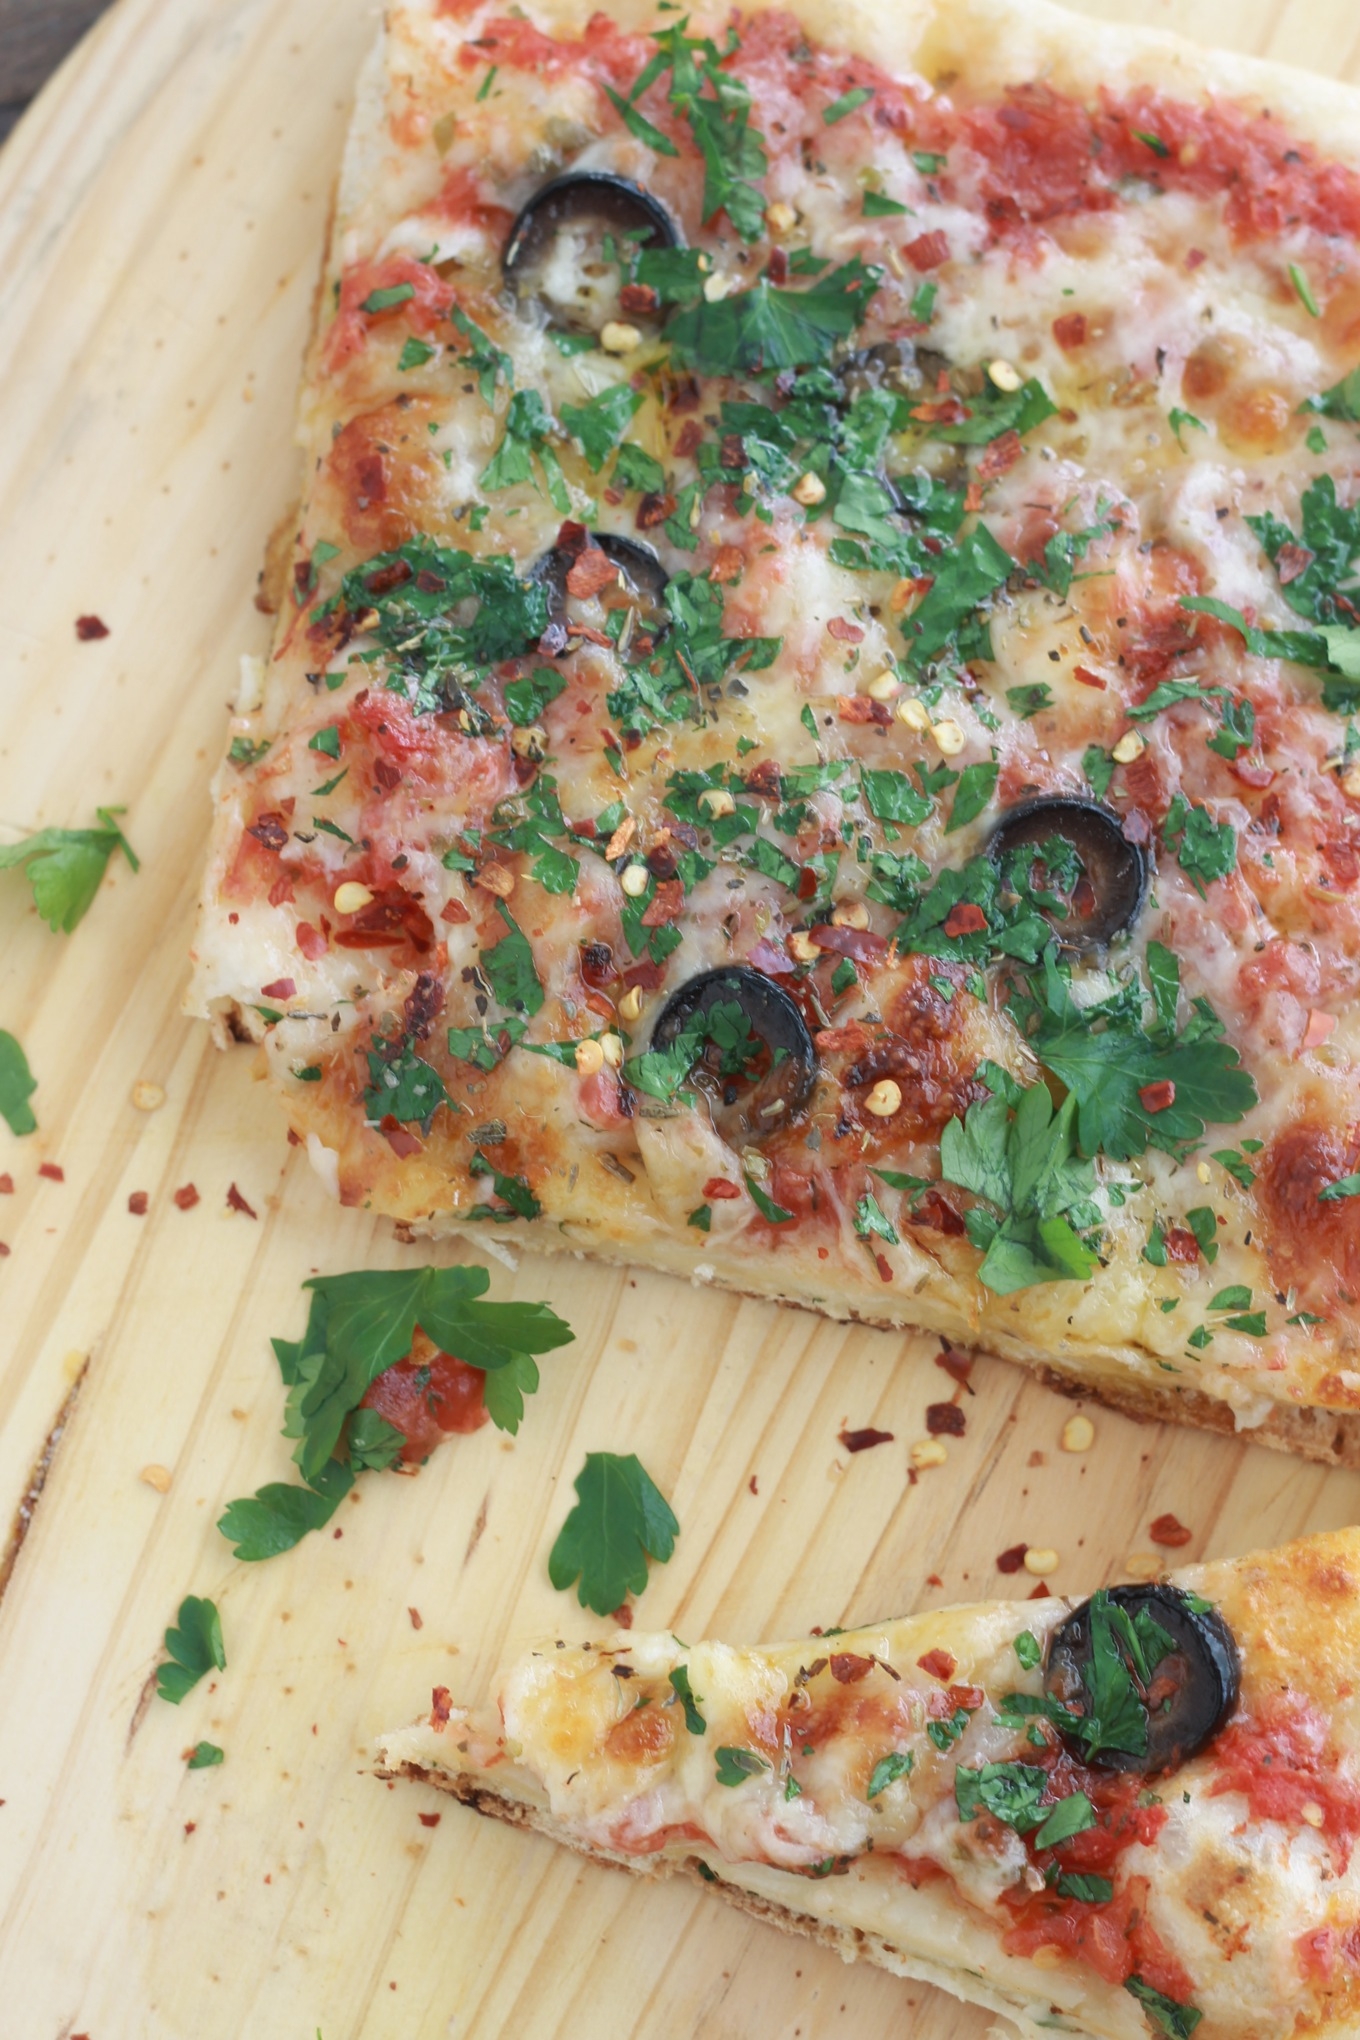 Recette de la pizza à la mozzarella et olives, délicieuse et très simple. Super rapide si vous préparez votre pâte à pizza et votre sauce tomate à l'avance.